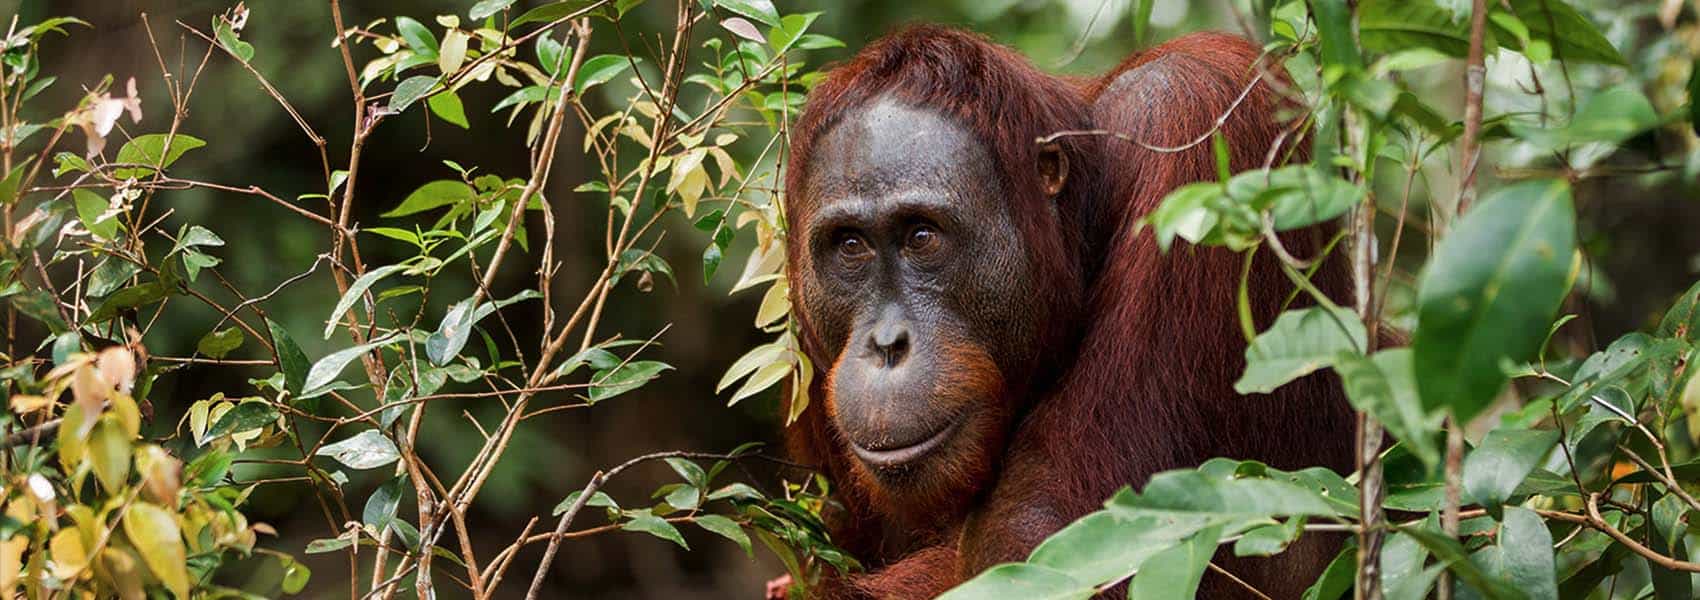 Orangutan male in rainforest